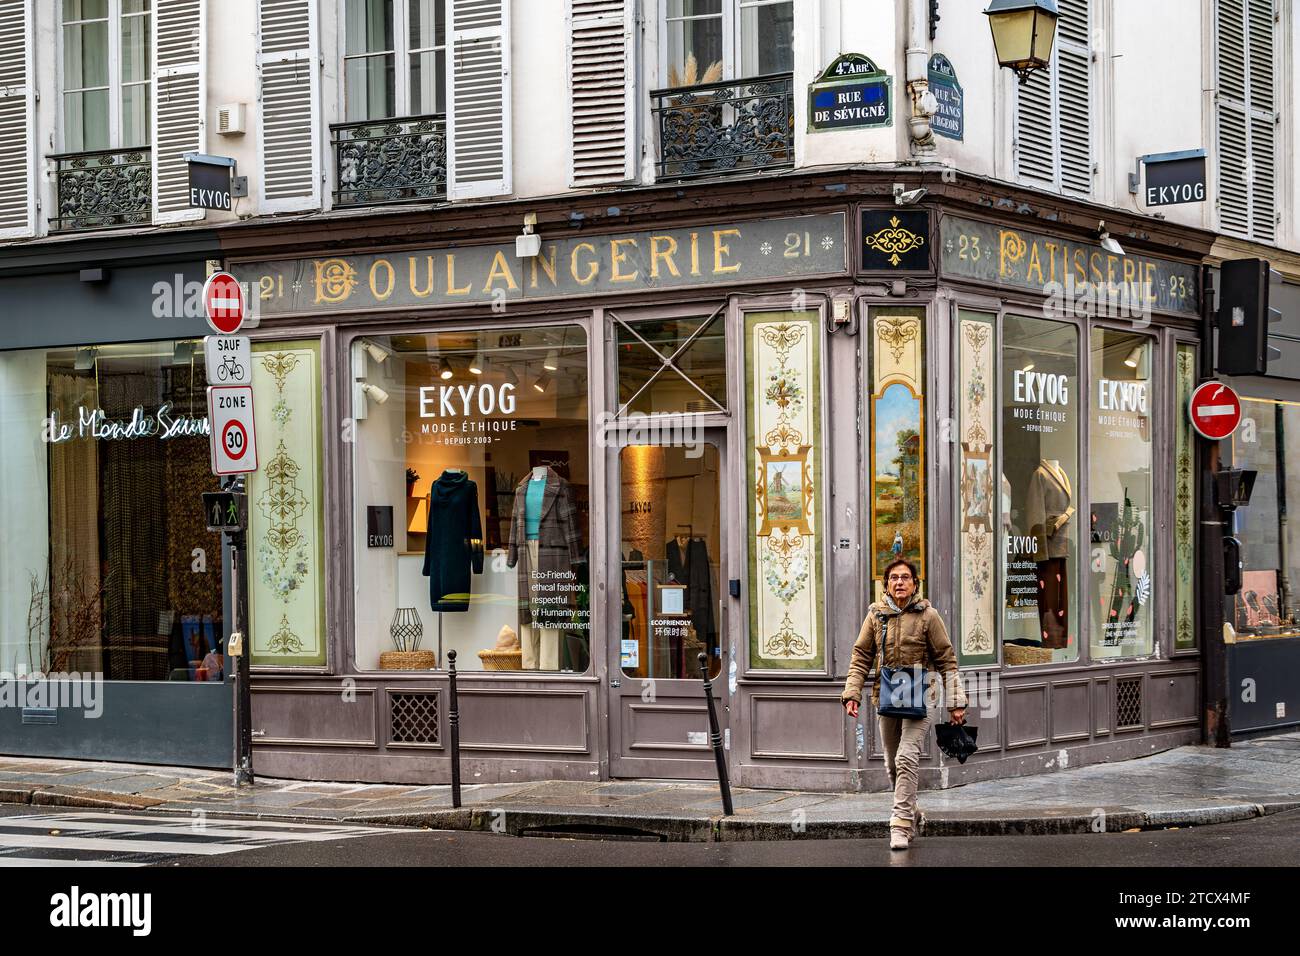 Ekyog, un magasin de vêtements éthiques et durables situé dans un navire boulangerie pâtisserie reconverti rue des Francs Bourgeois dans le Marais, Paris Banque D'Images